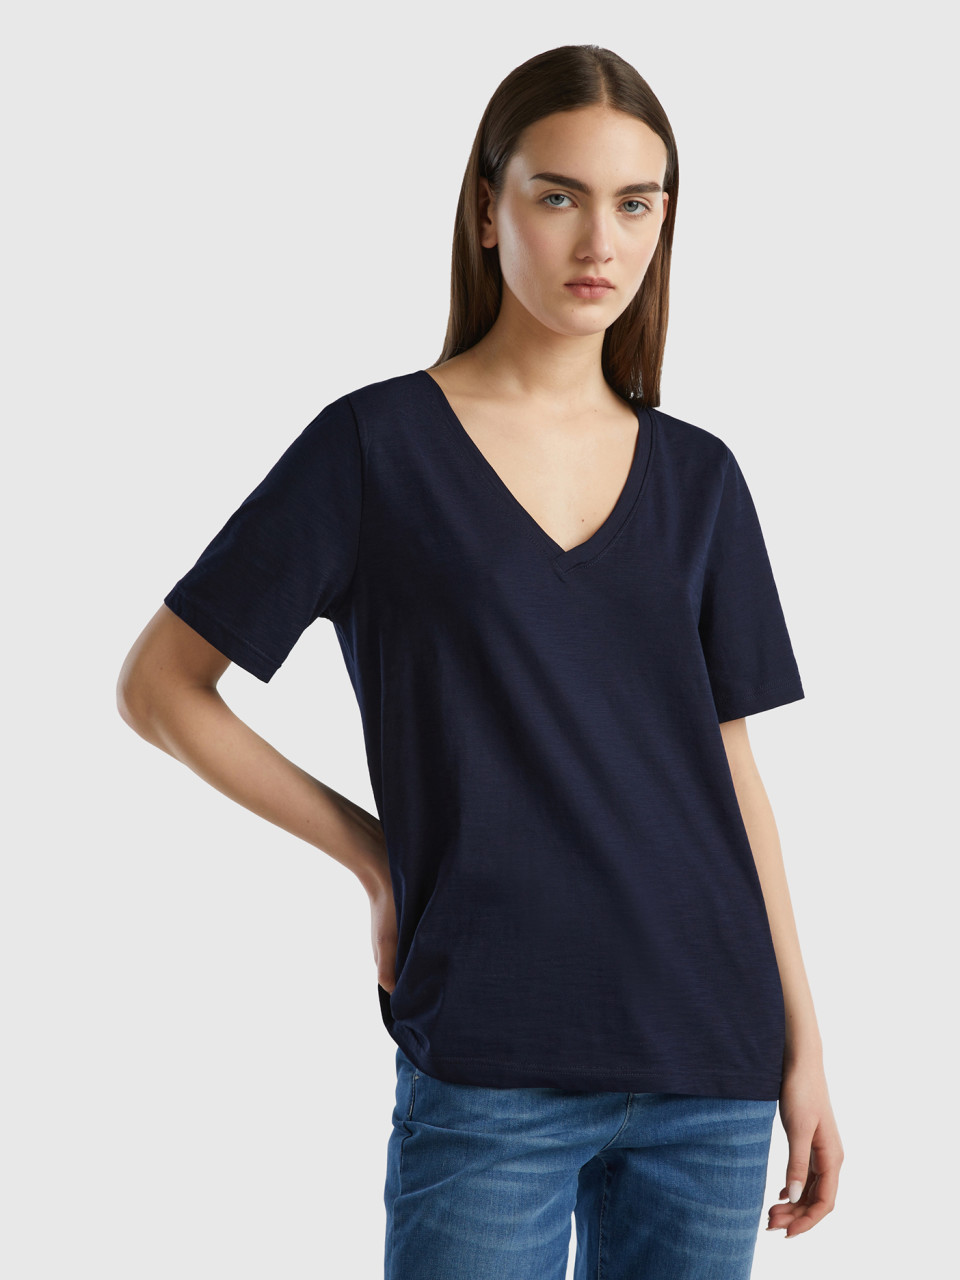 Benetton, Geflammtes Baumwoll-t-shirt Mit V-ausschnitt, Dunkelblau, female